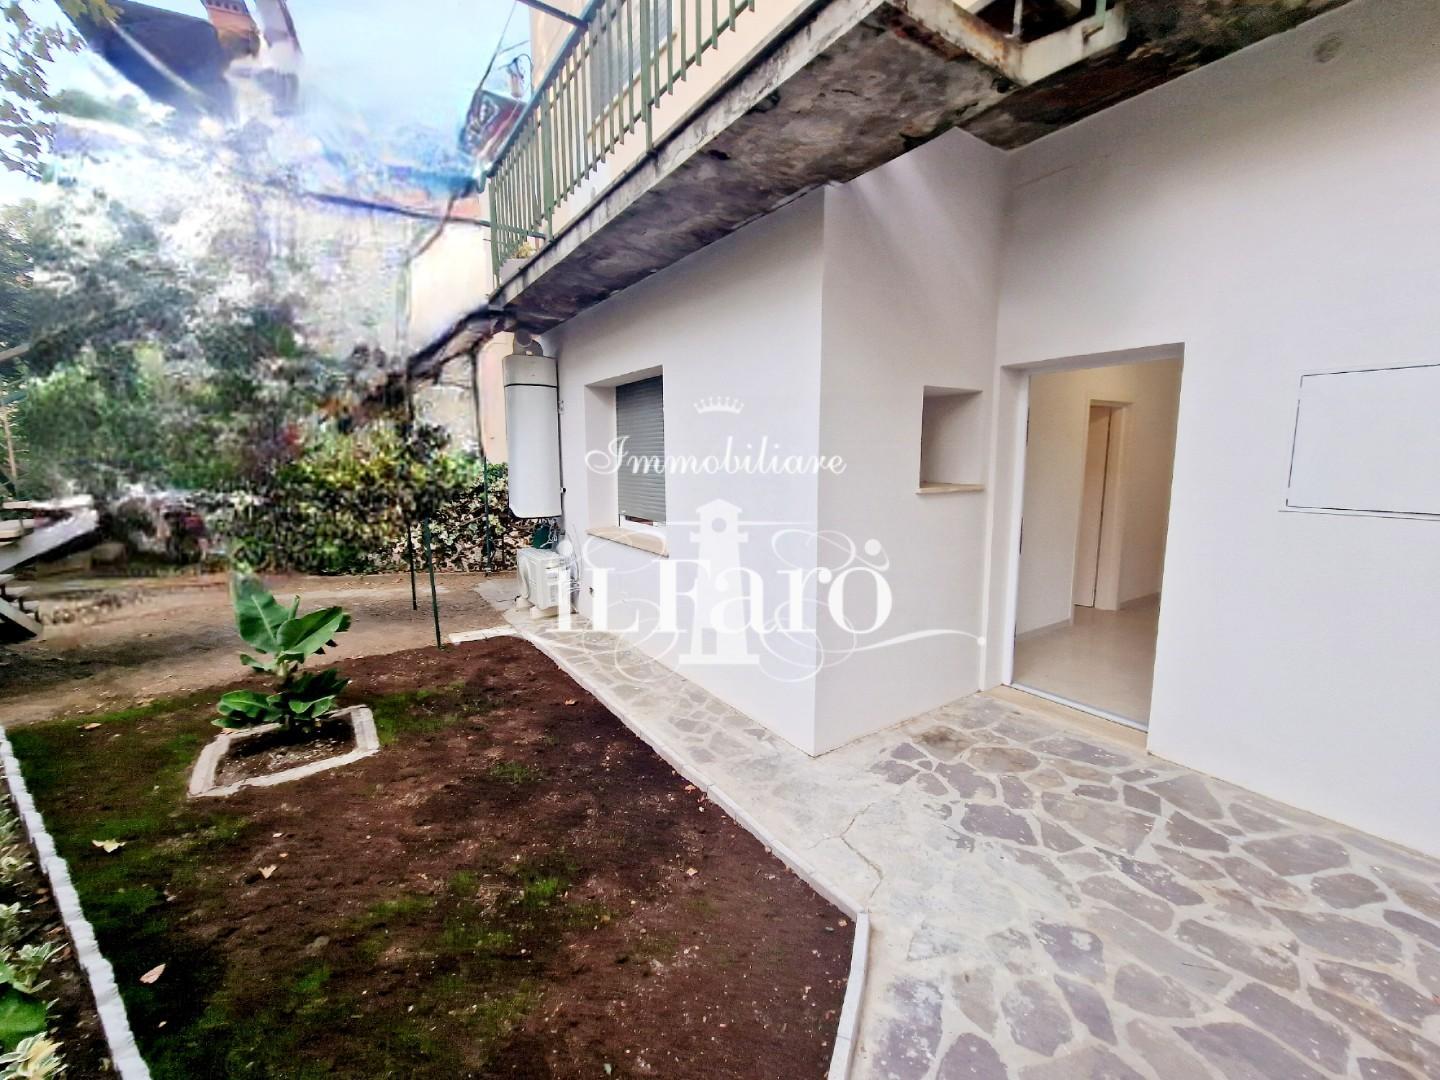 Appartamento in vendita a Signa, 2 locali, prezzo € 185.000 | PortaleAgenzieImmobiliari.it